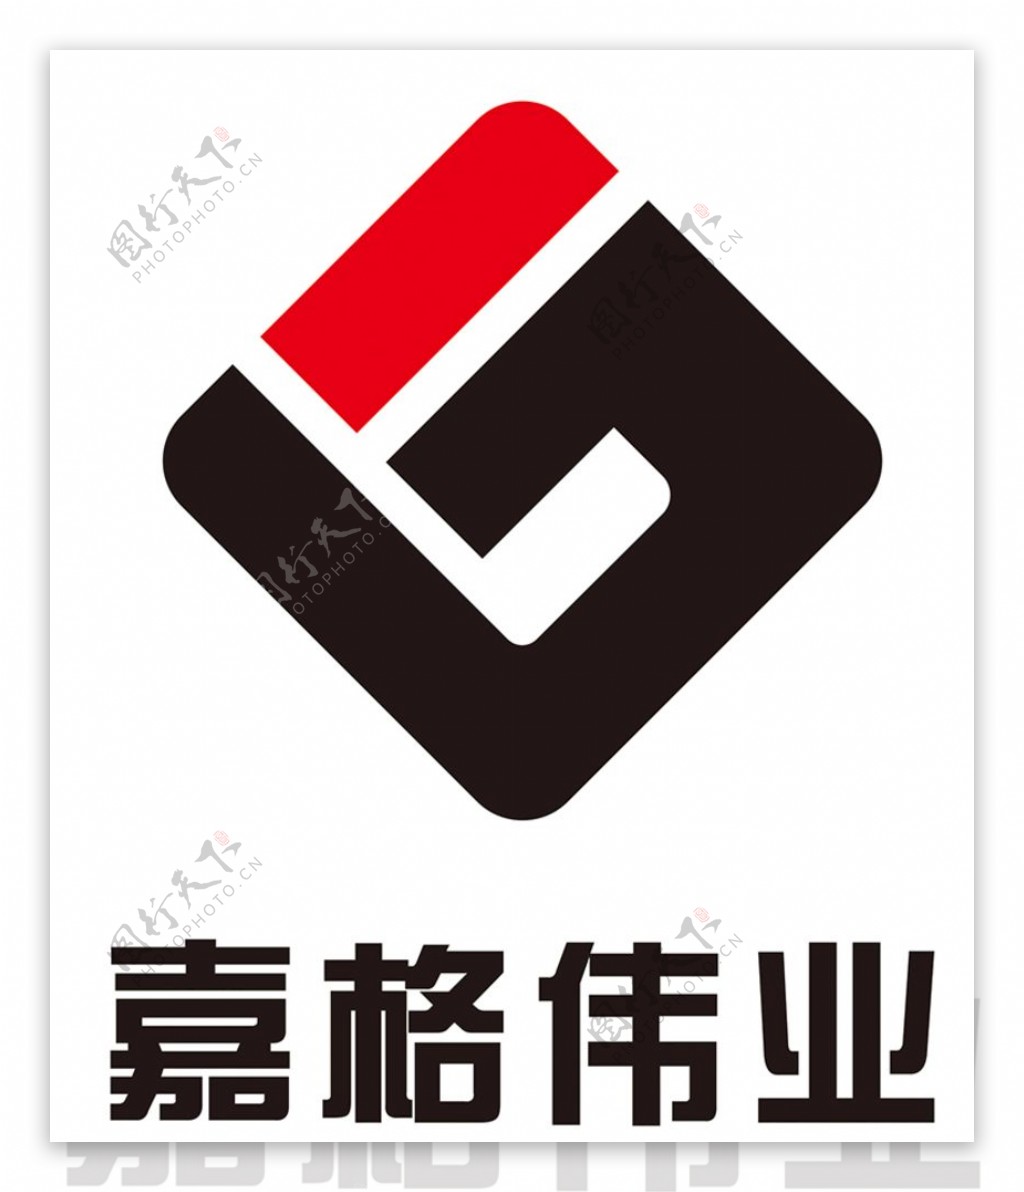 嘉格伟业logo